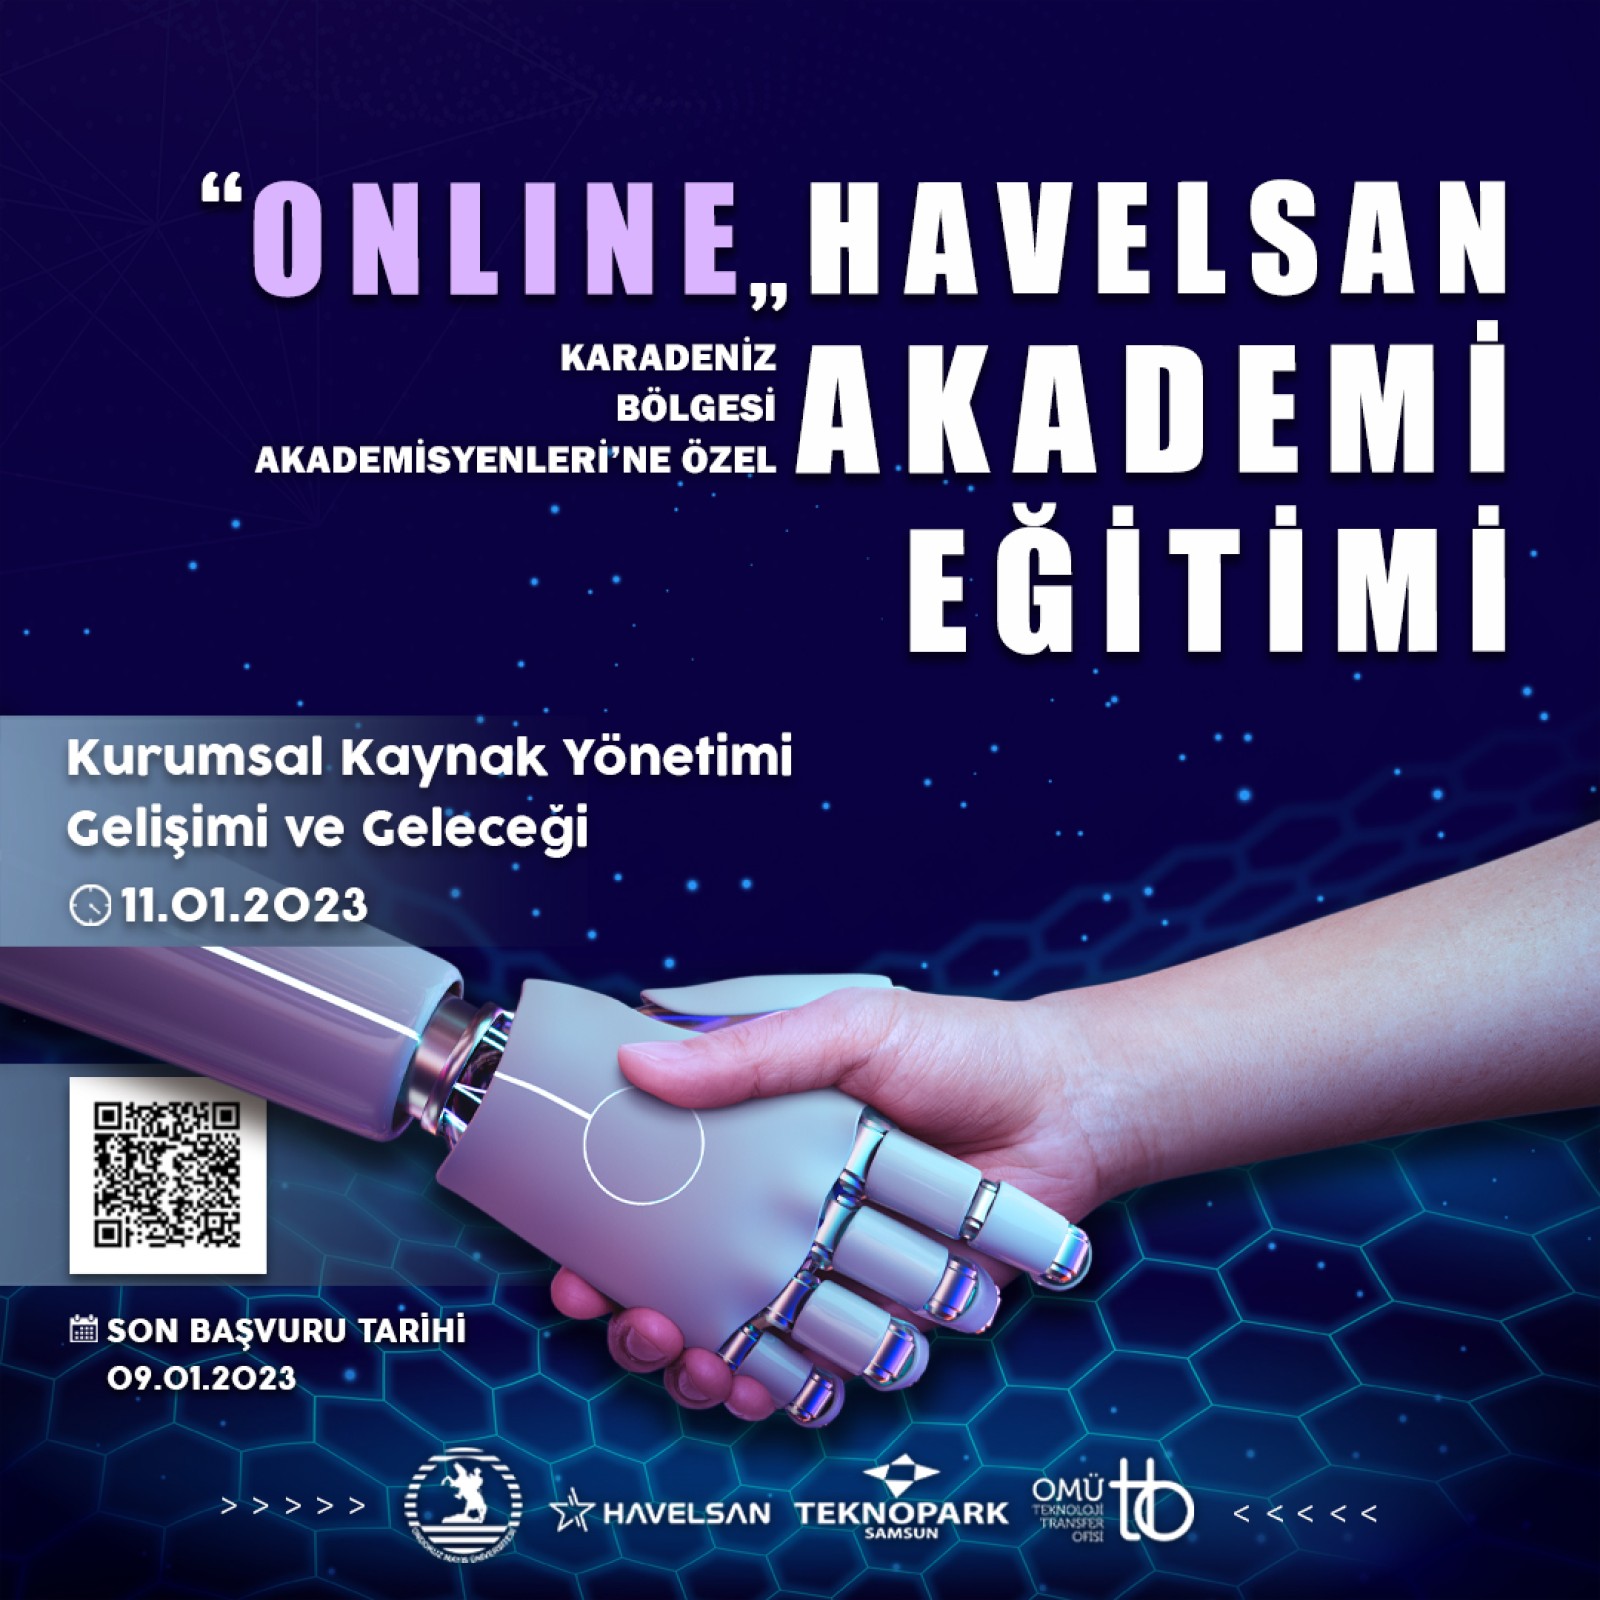 Karadeniz Bölgesi Akademisyenlerine Özel HAVELSAN Akademi Eğitimlerimiz Online Olarak Başlıyor!